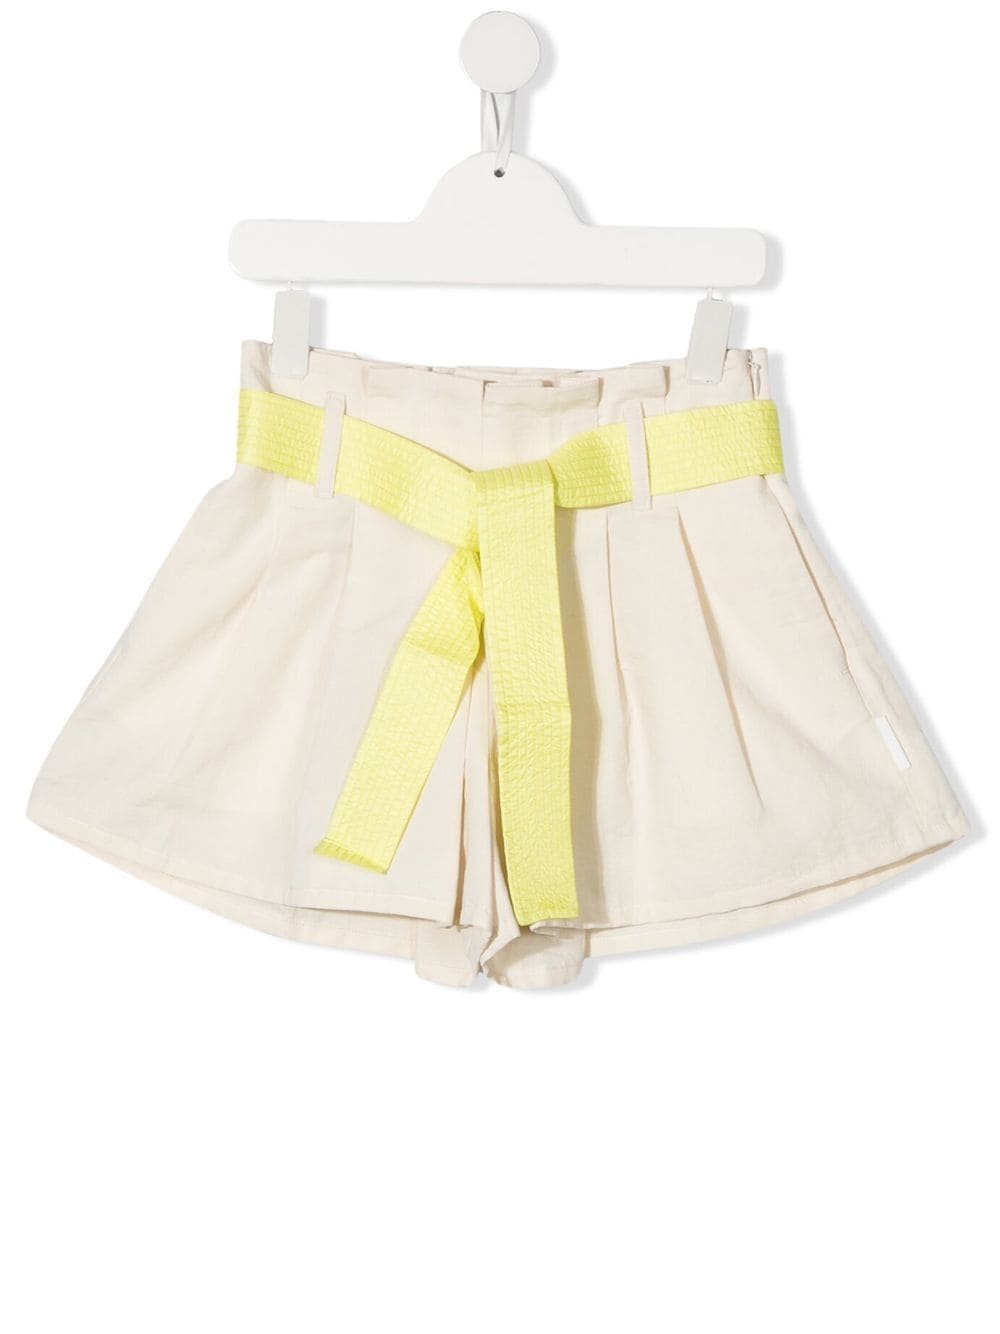 Moncler Enfant tied-waist pleated shorts - Neutrals von Moncler Enfant